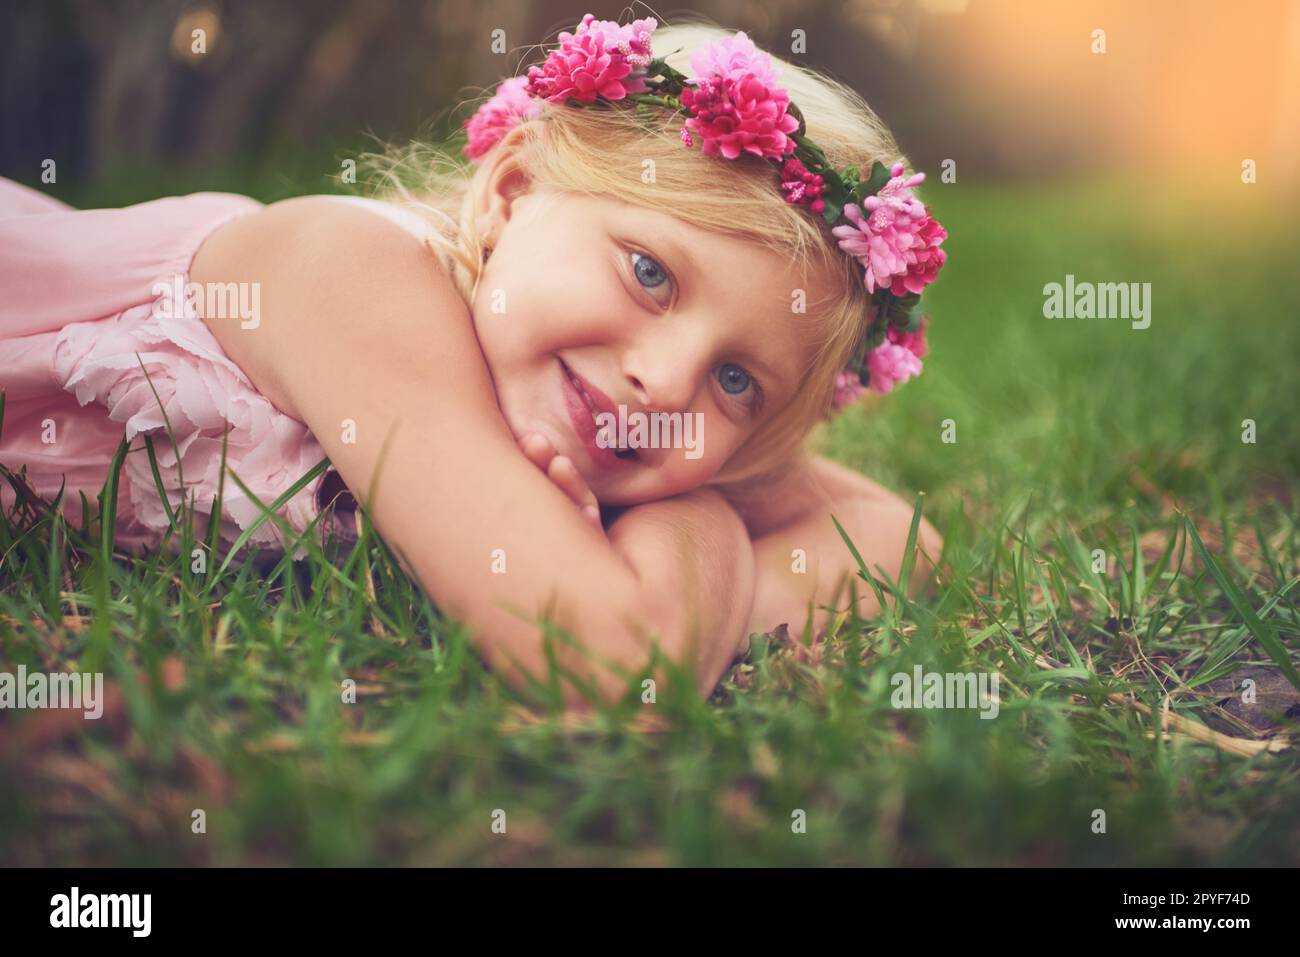 Shes in connessione con la natura. una bambina felice guardando la macchina fotografica mentre sdraiata sul terreno all'esterno in natura. Foto Stock